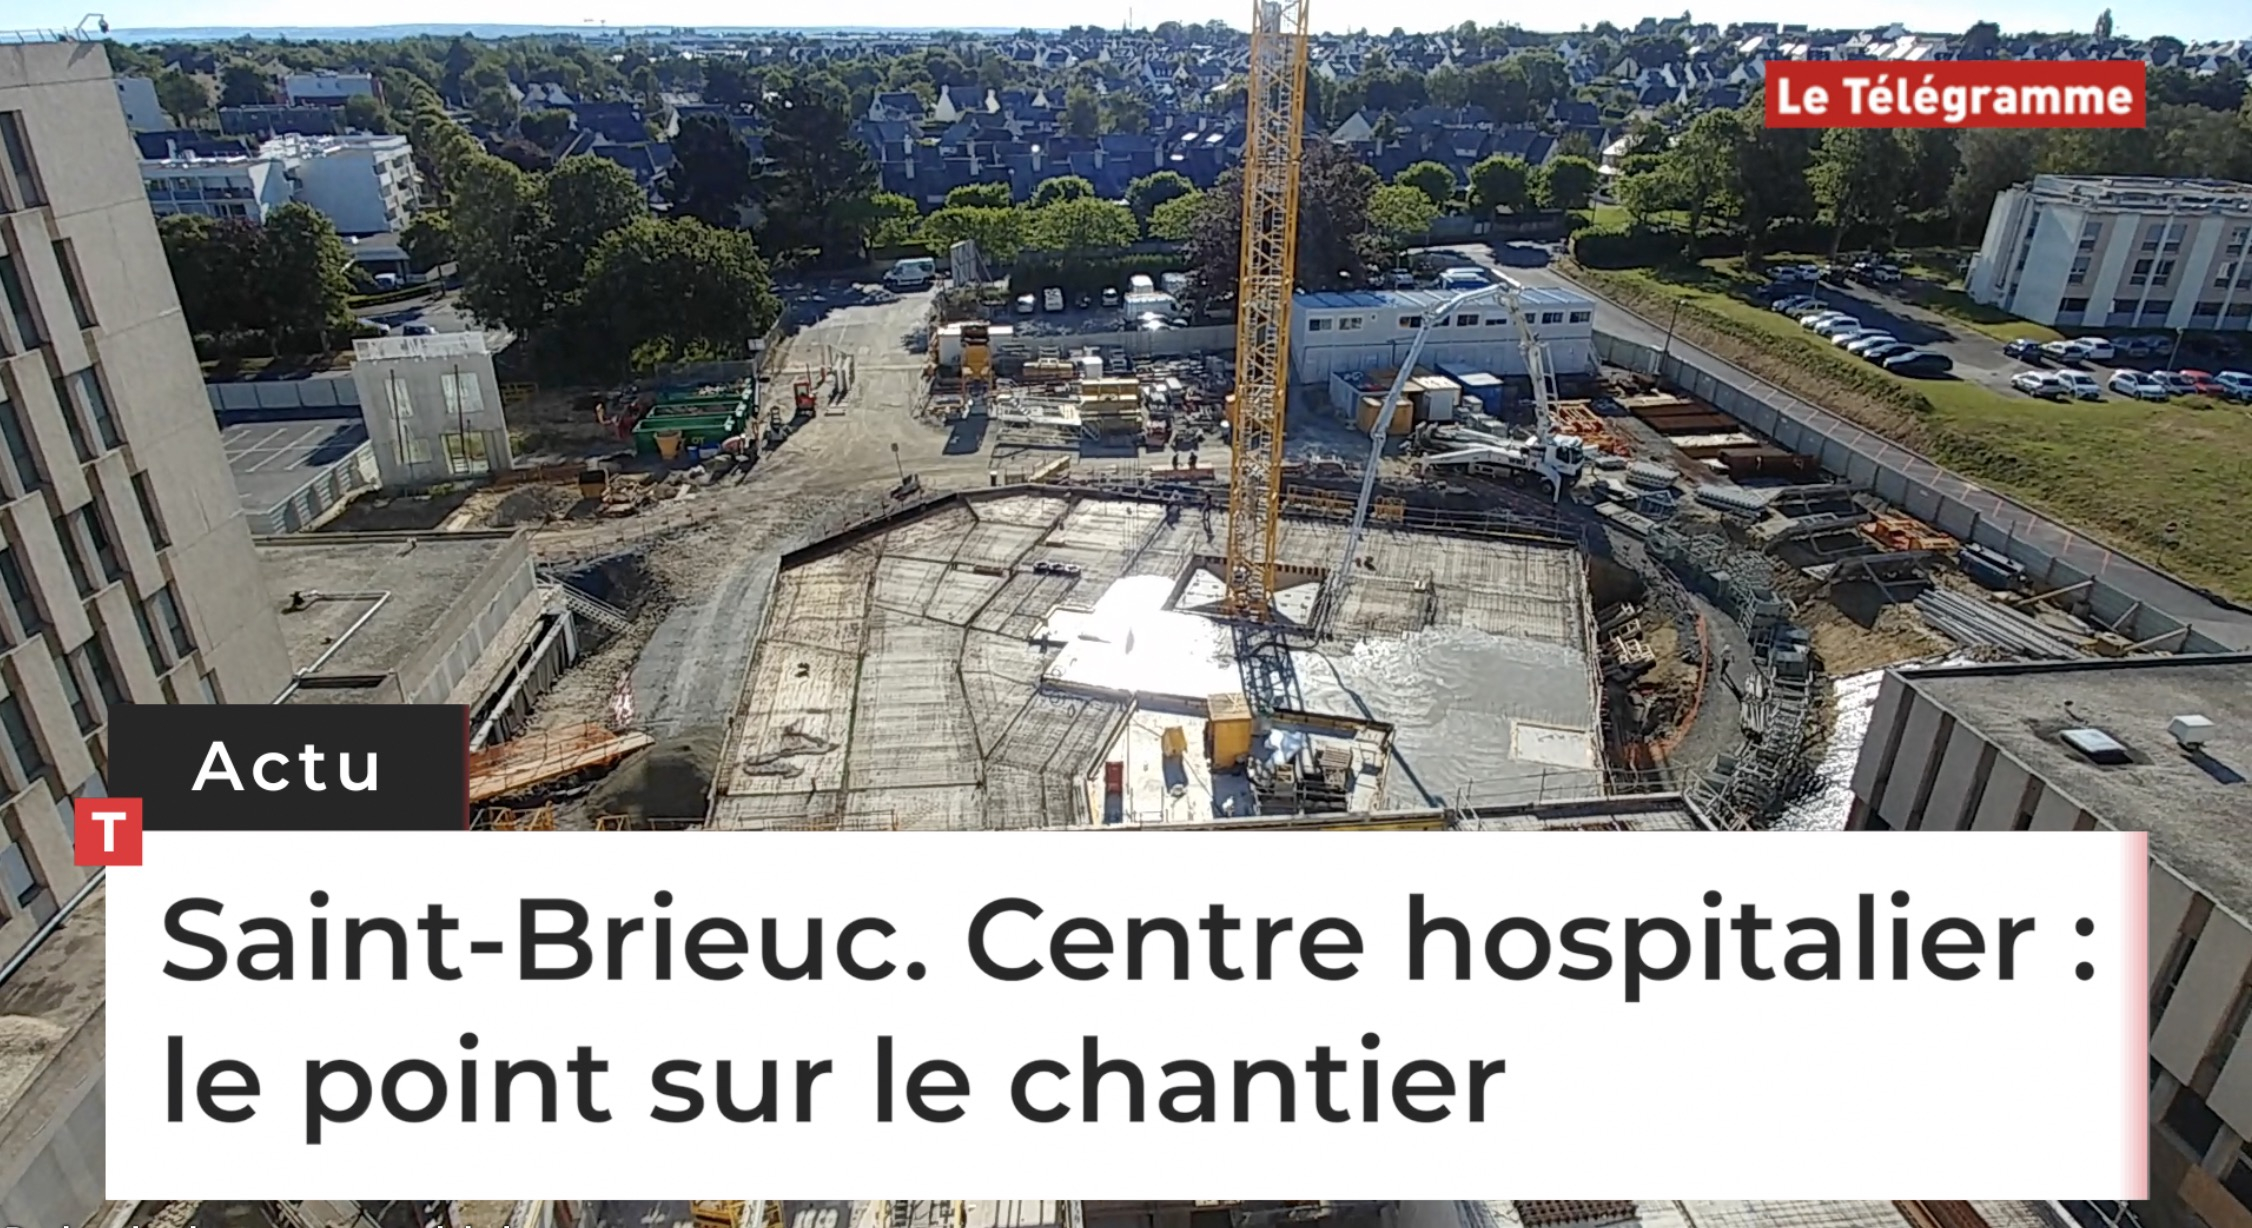 Saint-Brieuc. Centre hospitalier : le point sur le chantier (Le Télégramme)